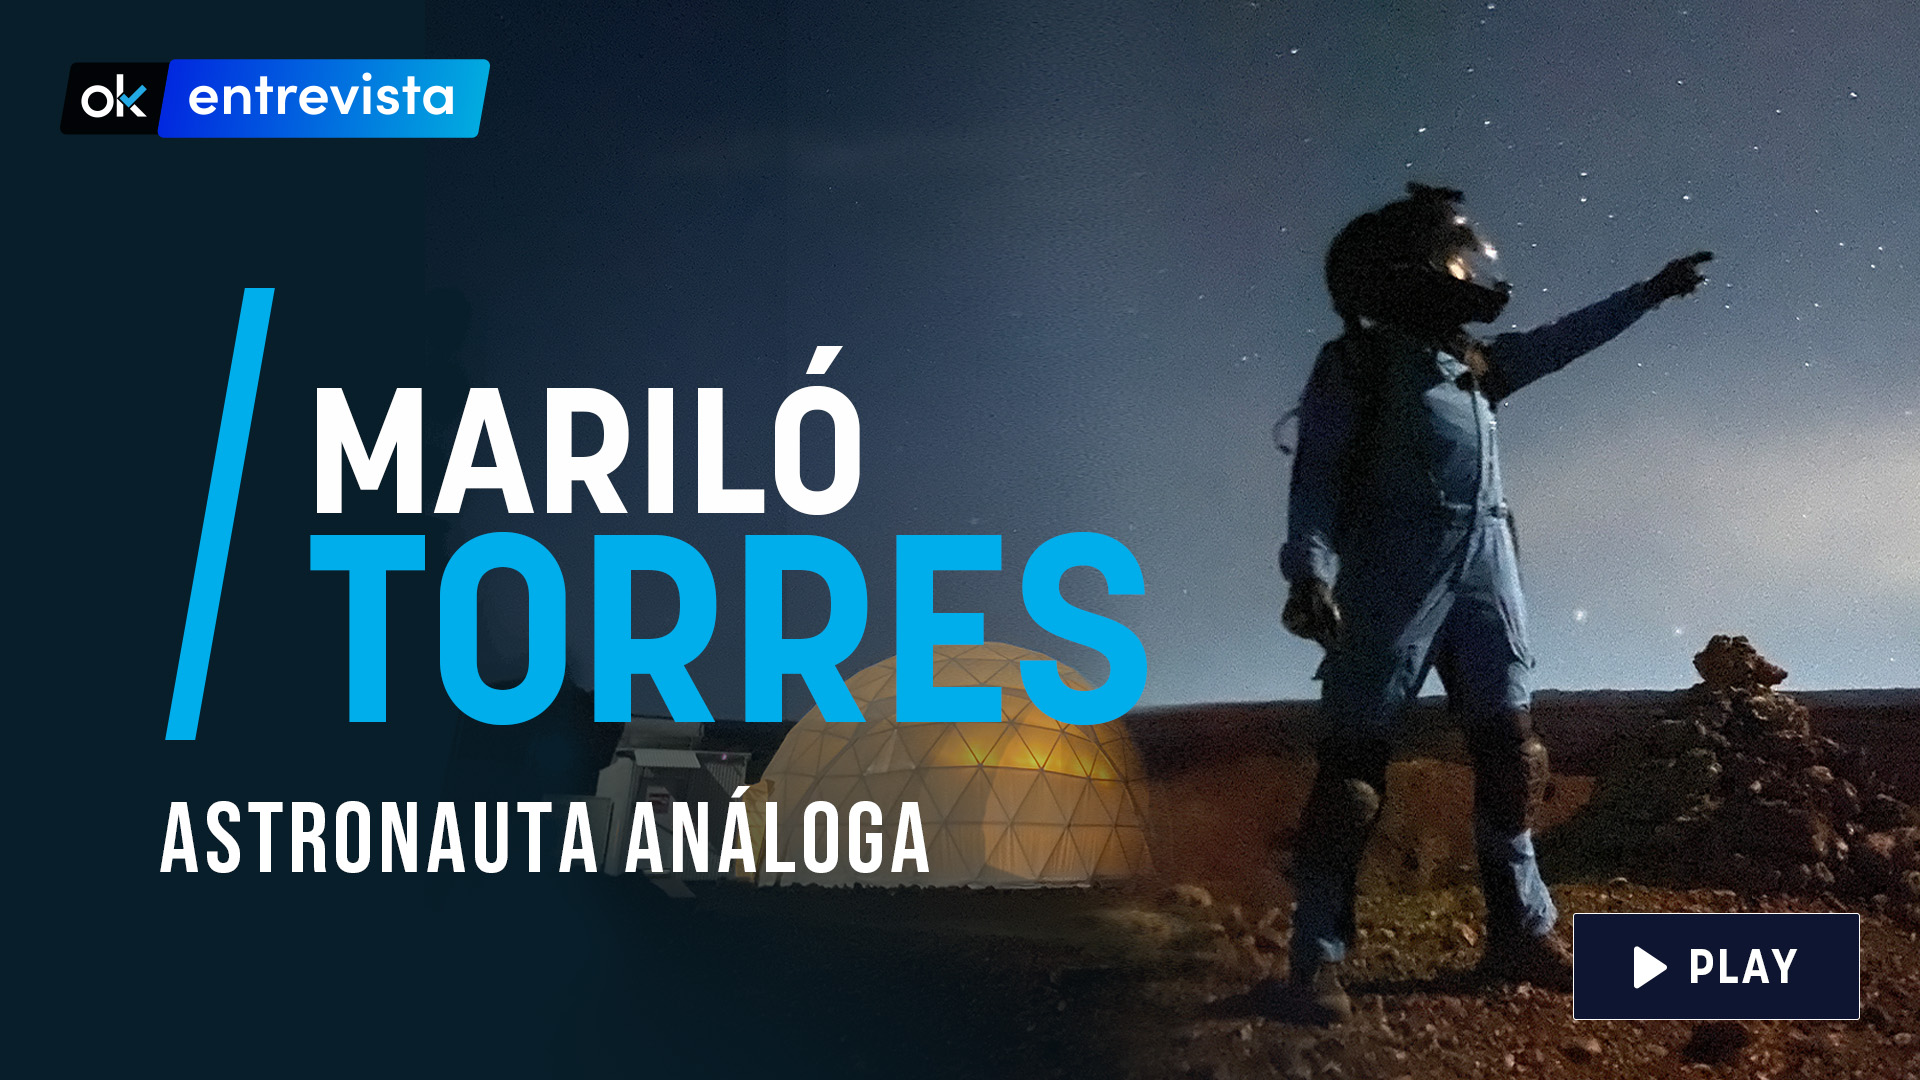 Entrevista Mariló Torres, astronauta análoga.